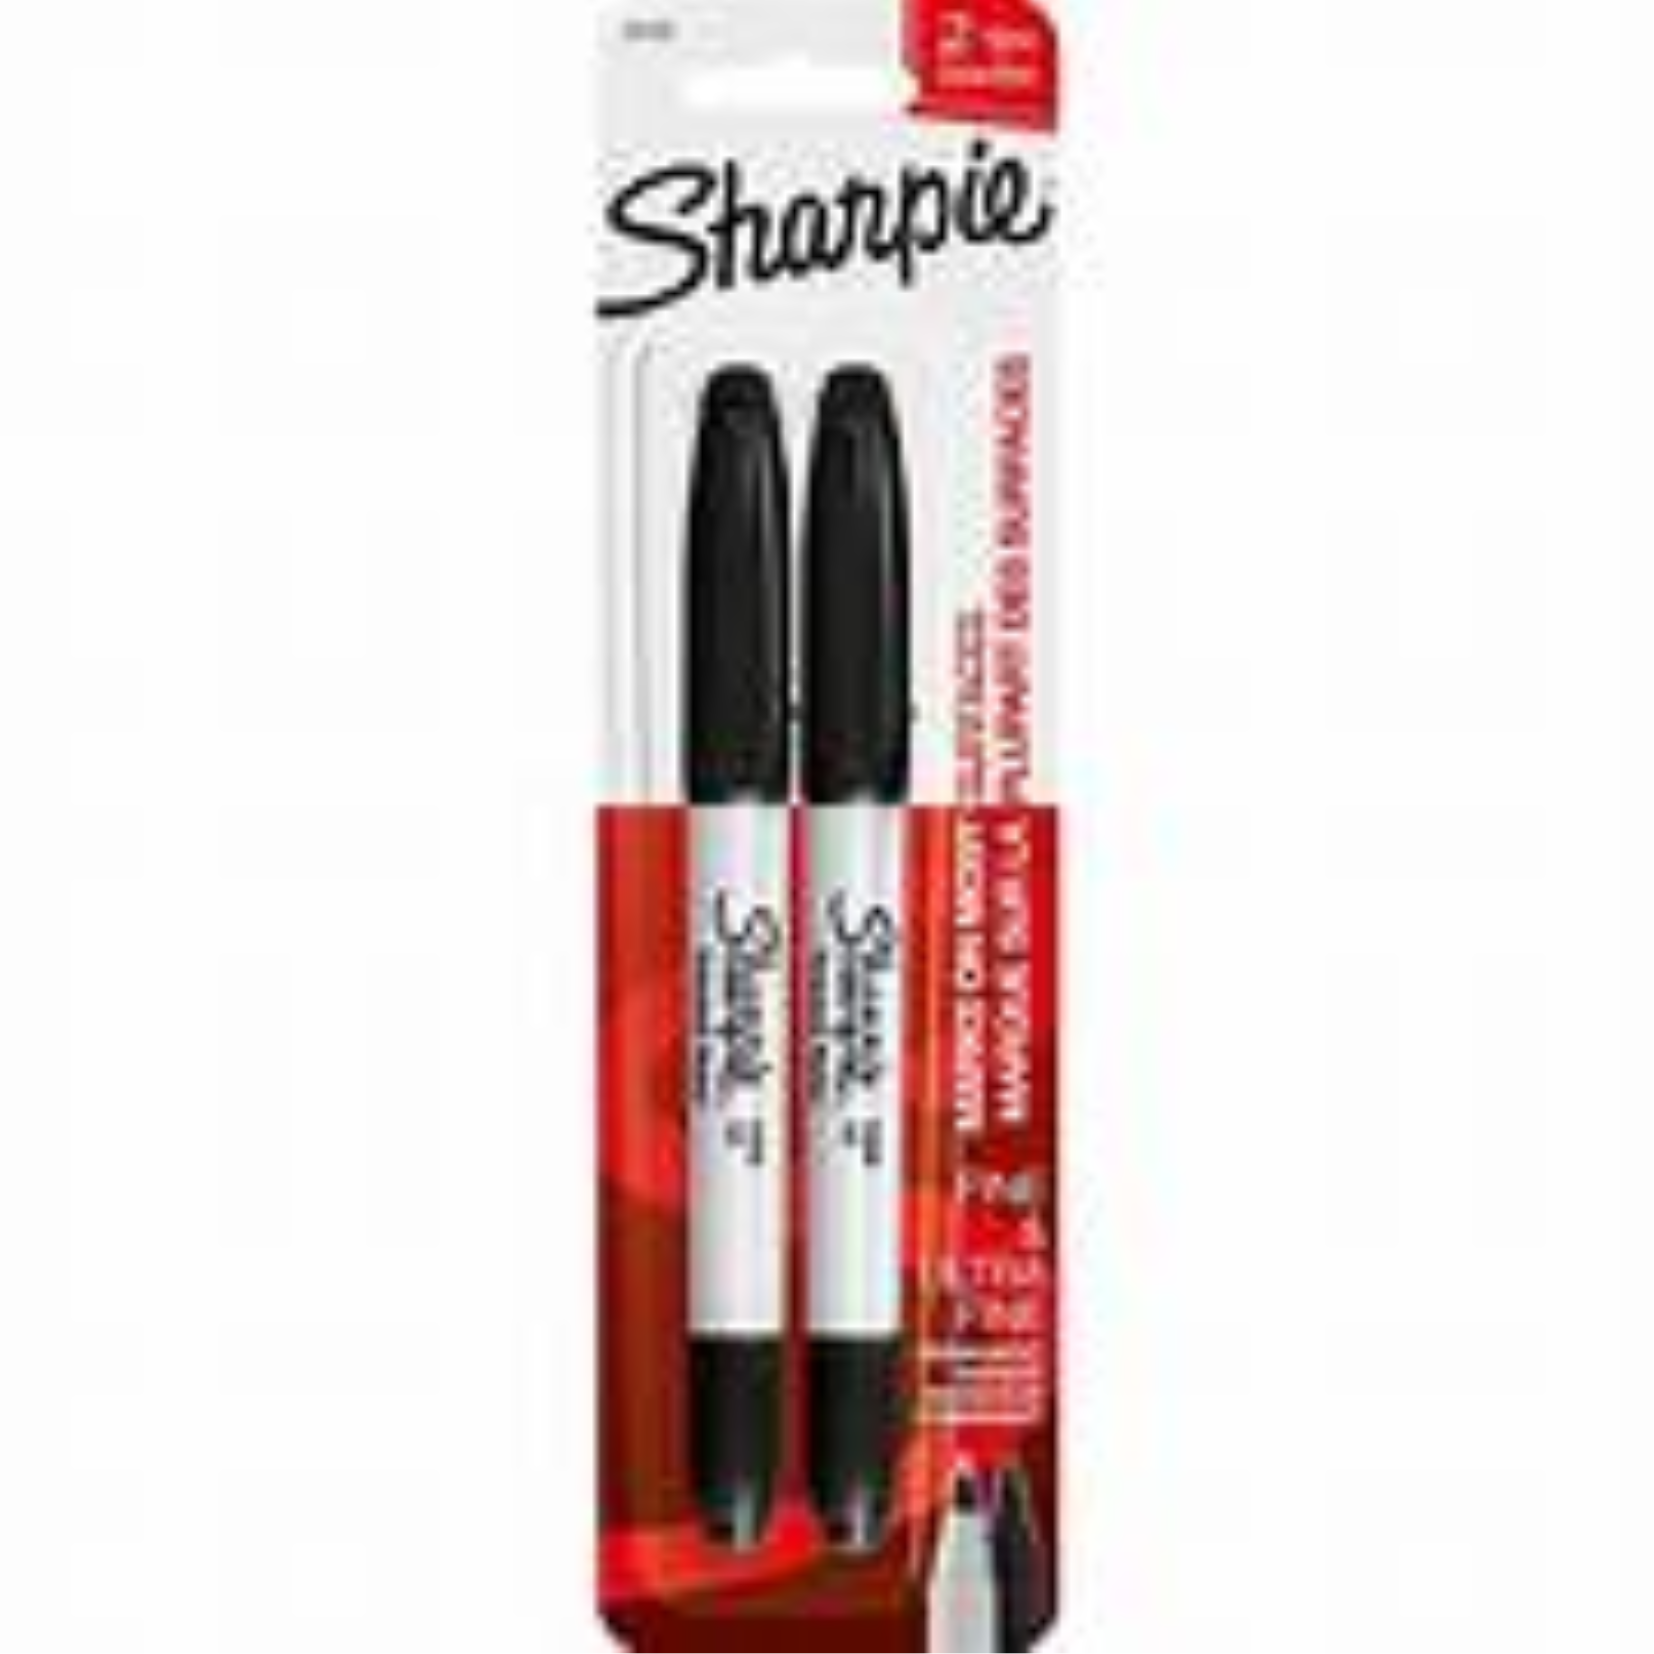 Sharpie Fine Permanent Marker 2ct